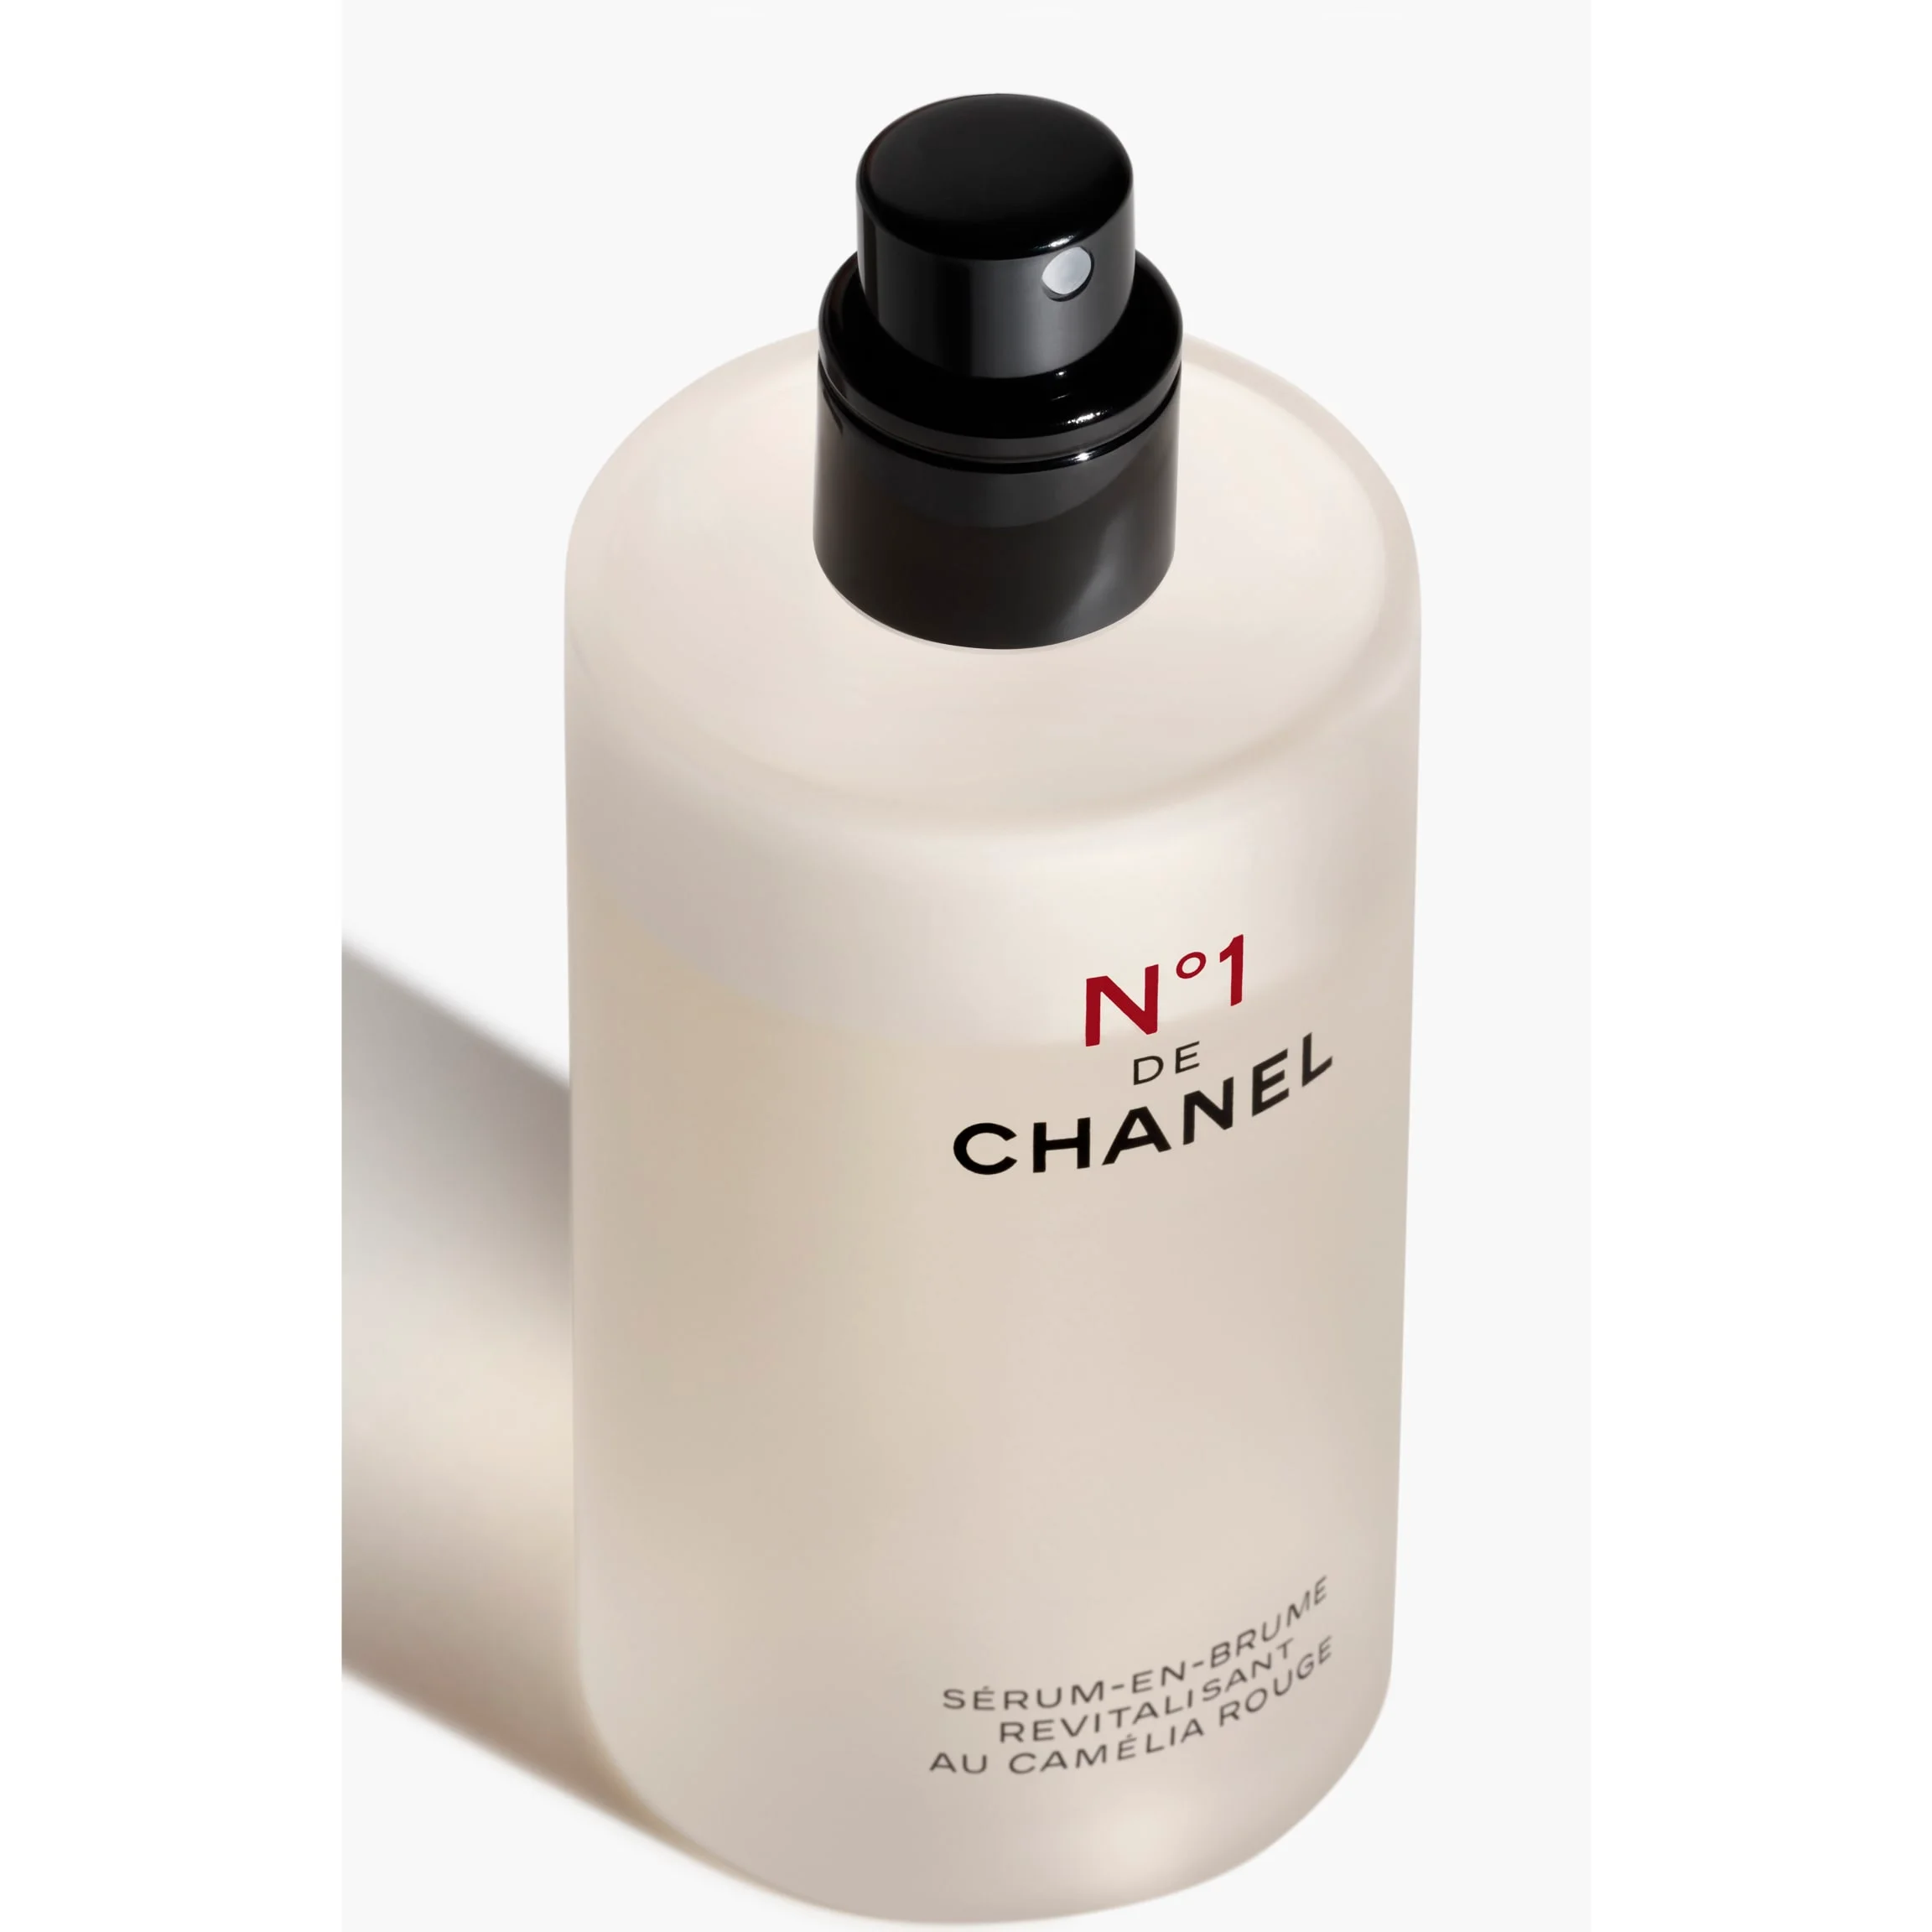 Chanel + N°1 DE CHANEL REVITALIZING SERUM-IN-MIST Anti